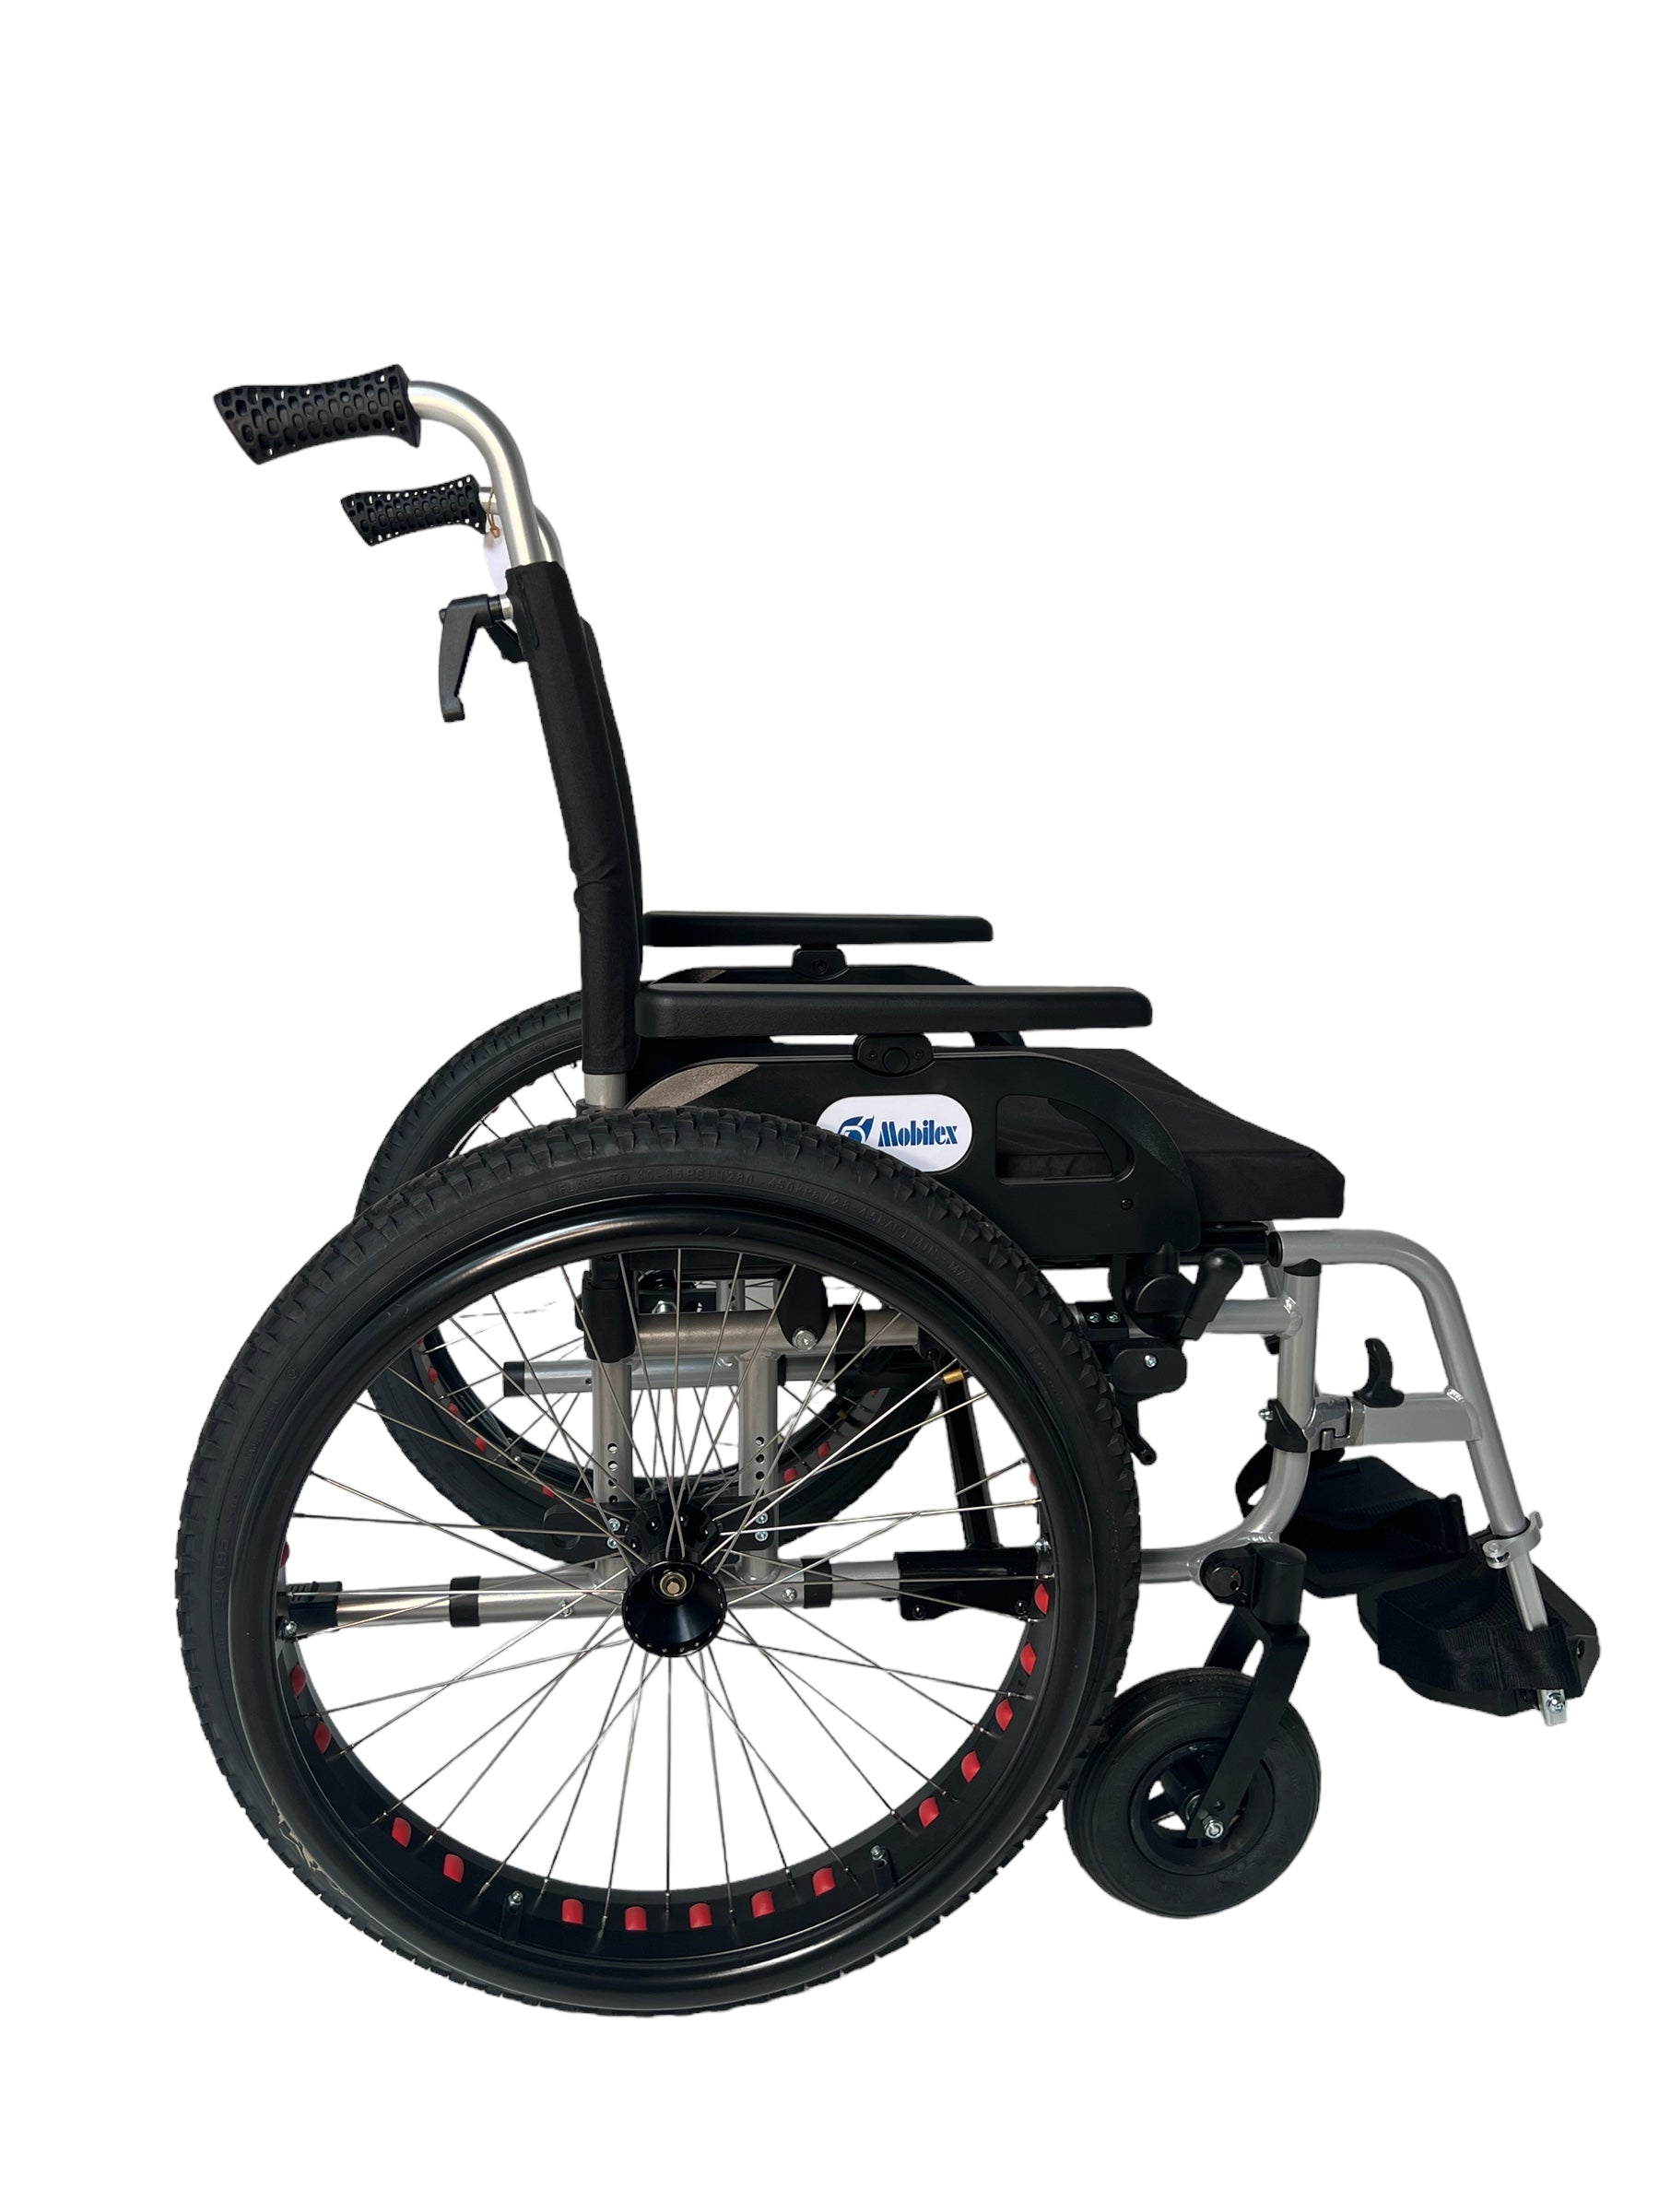 OFF-ROAD kørestol. Super lækker kørestol med terrængående dæk. 4 størrelser., 51 cm